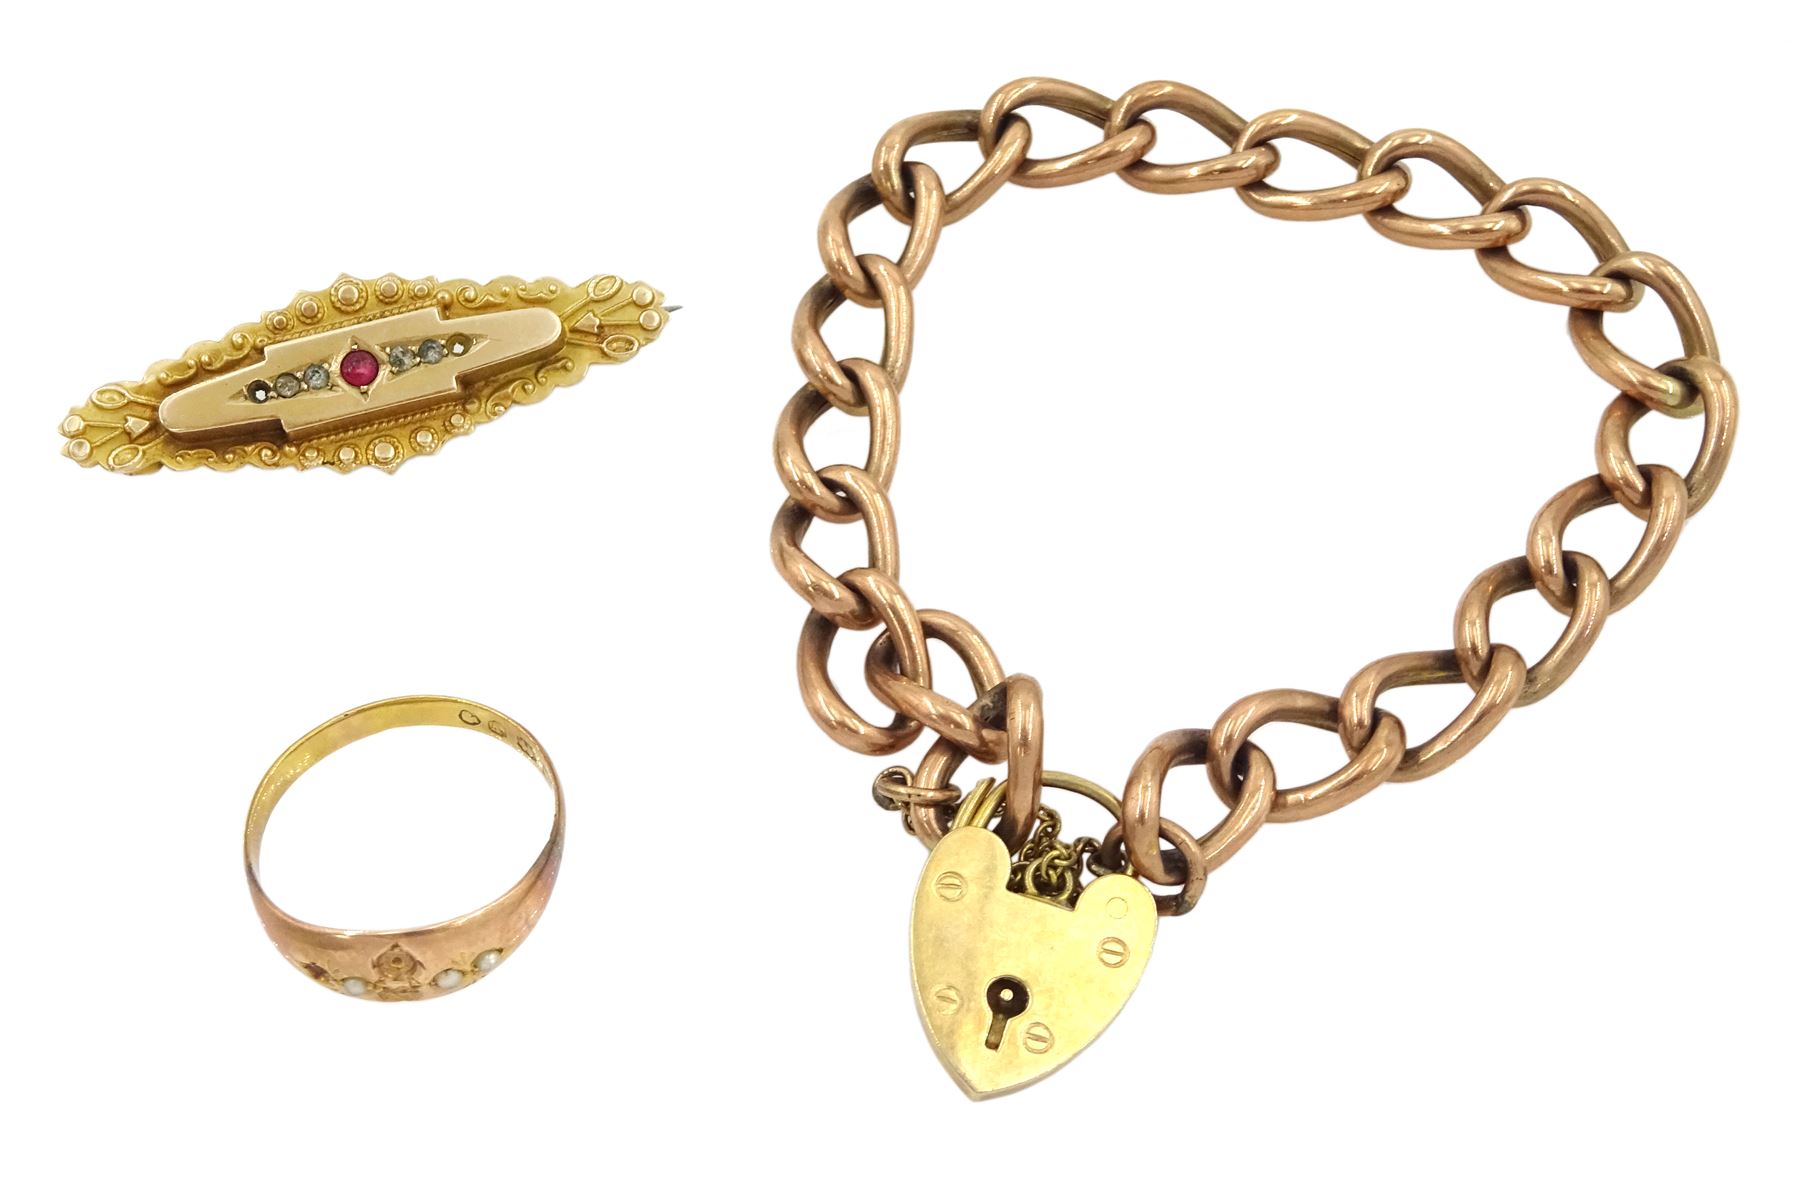 Rose gold curb link bracelet